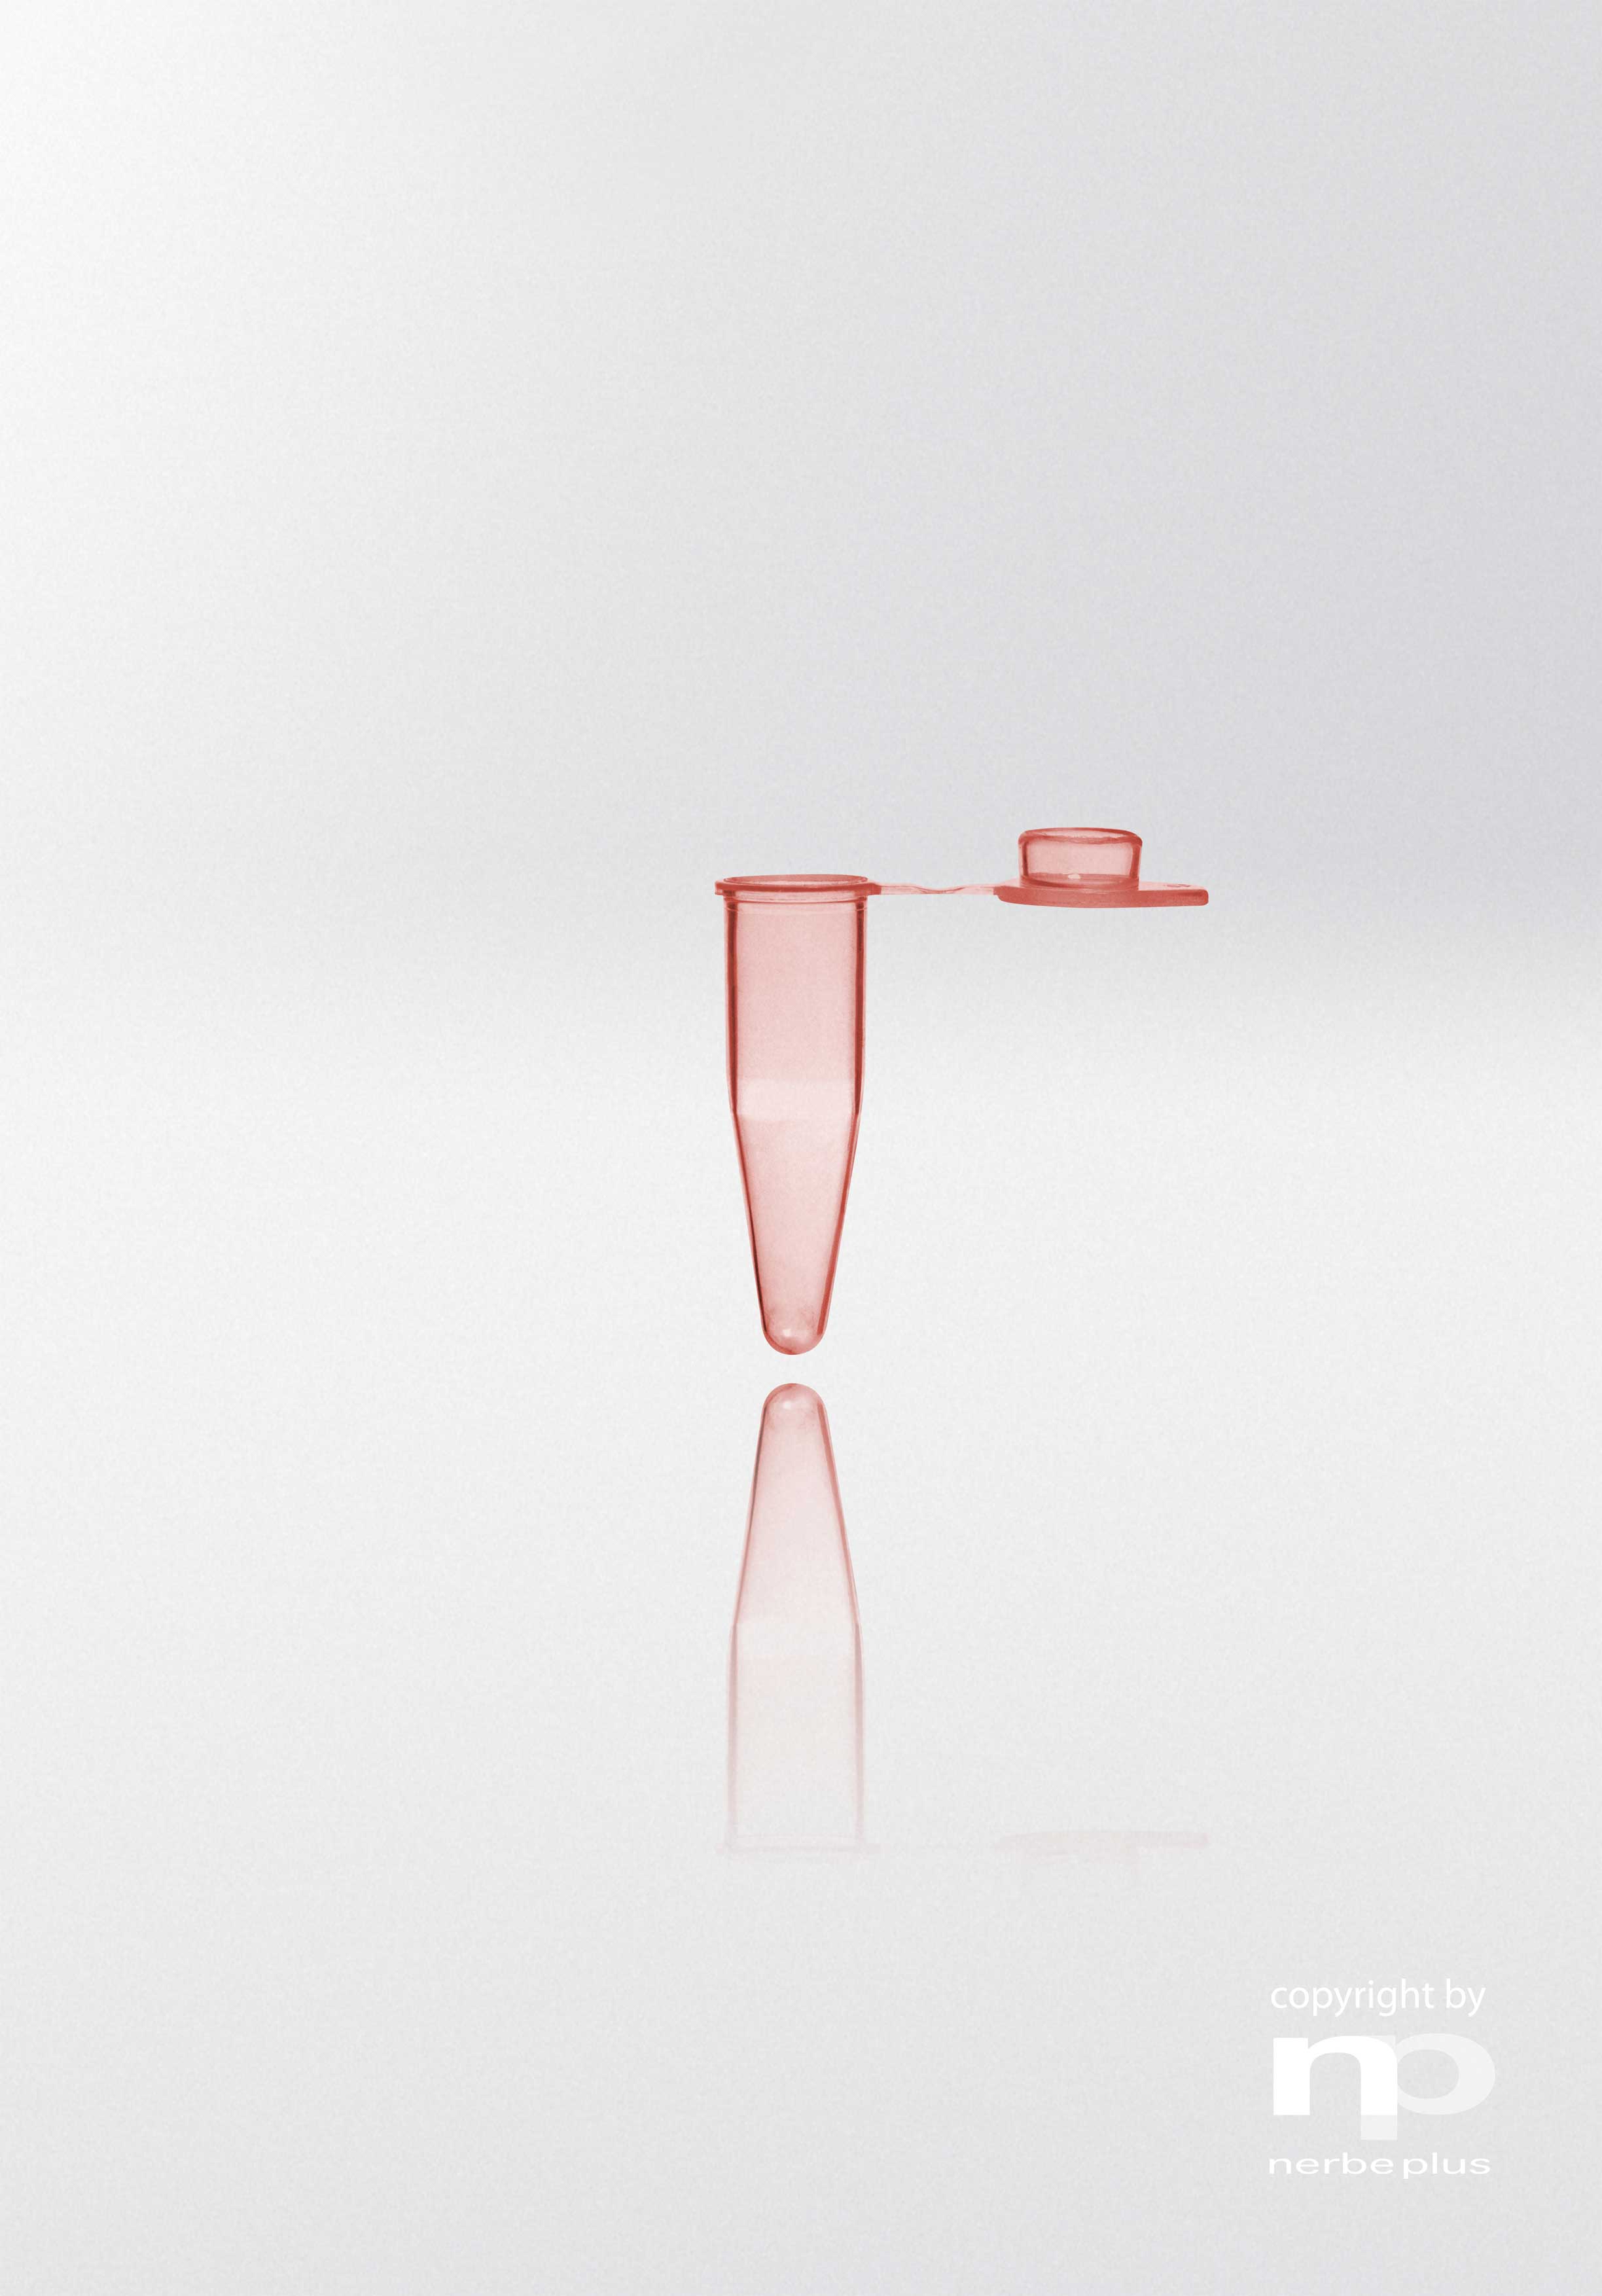 Tubos para PCR. NERBE-PLUS. Capacidad (ml): 0,2. Resist. centrif. (g): 20000. Tapón: Plano. Color tubo/tapón: Rojo/Rojo. Esterilidad: PCR Ready. qPCR: Sí